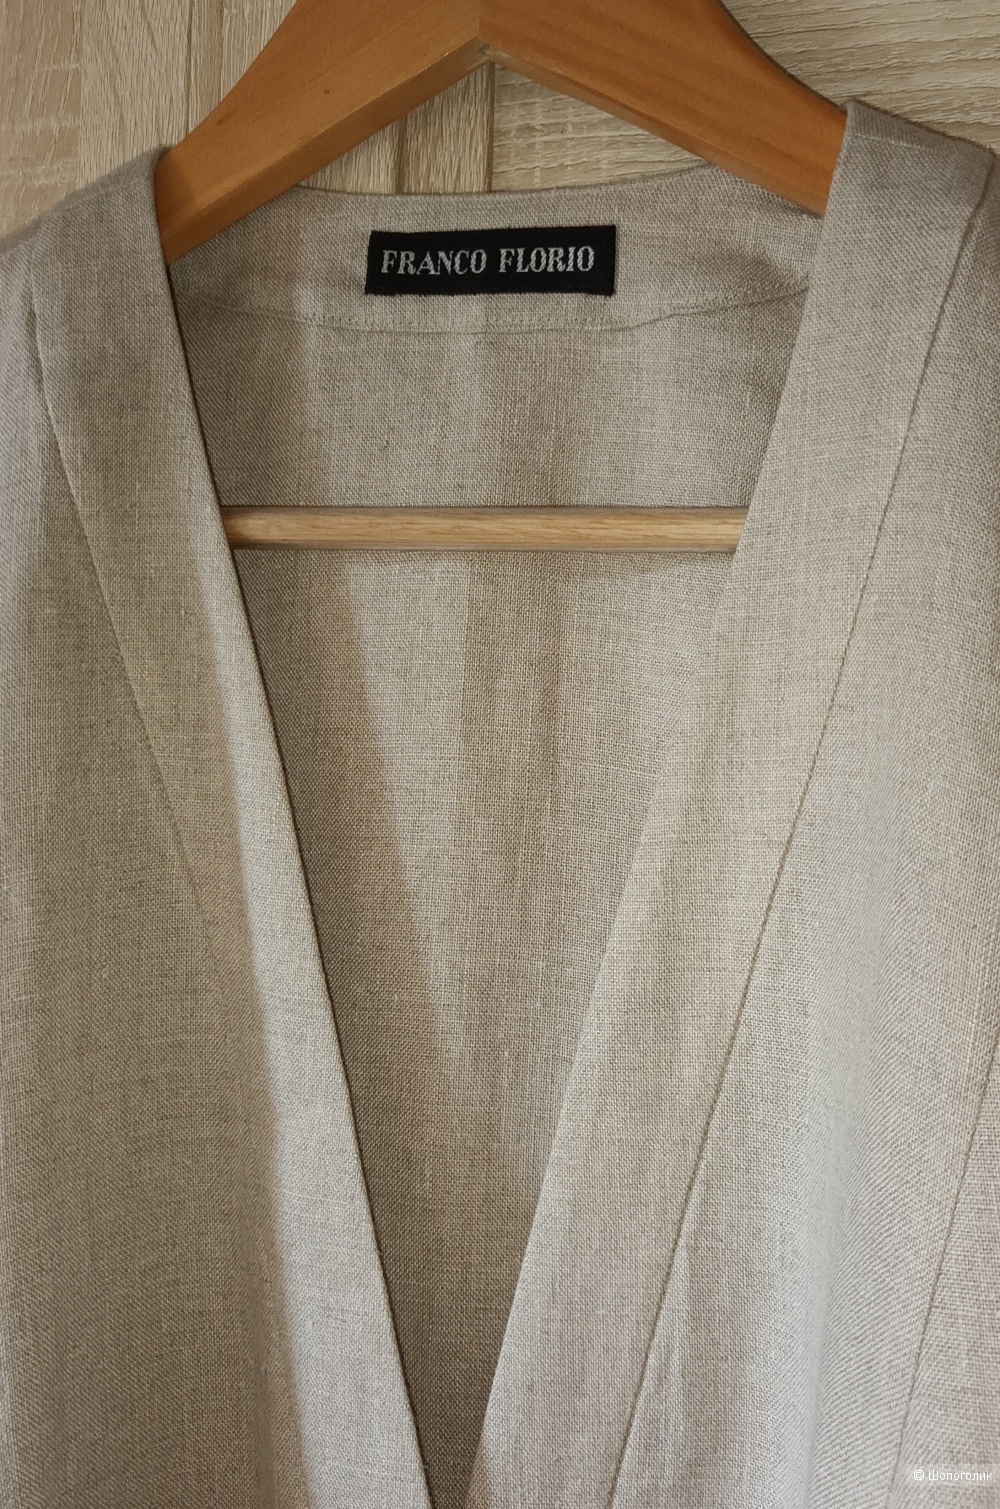 Льняной пиджак Franco Florio/L